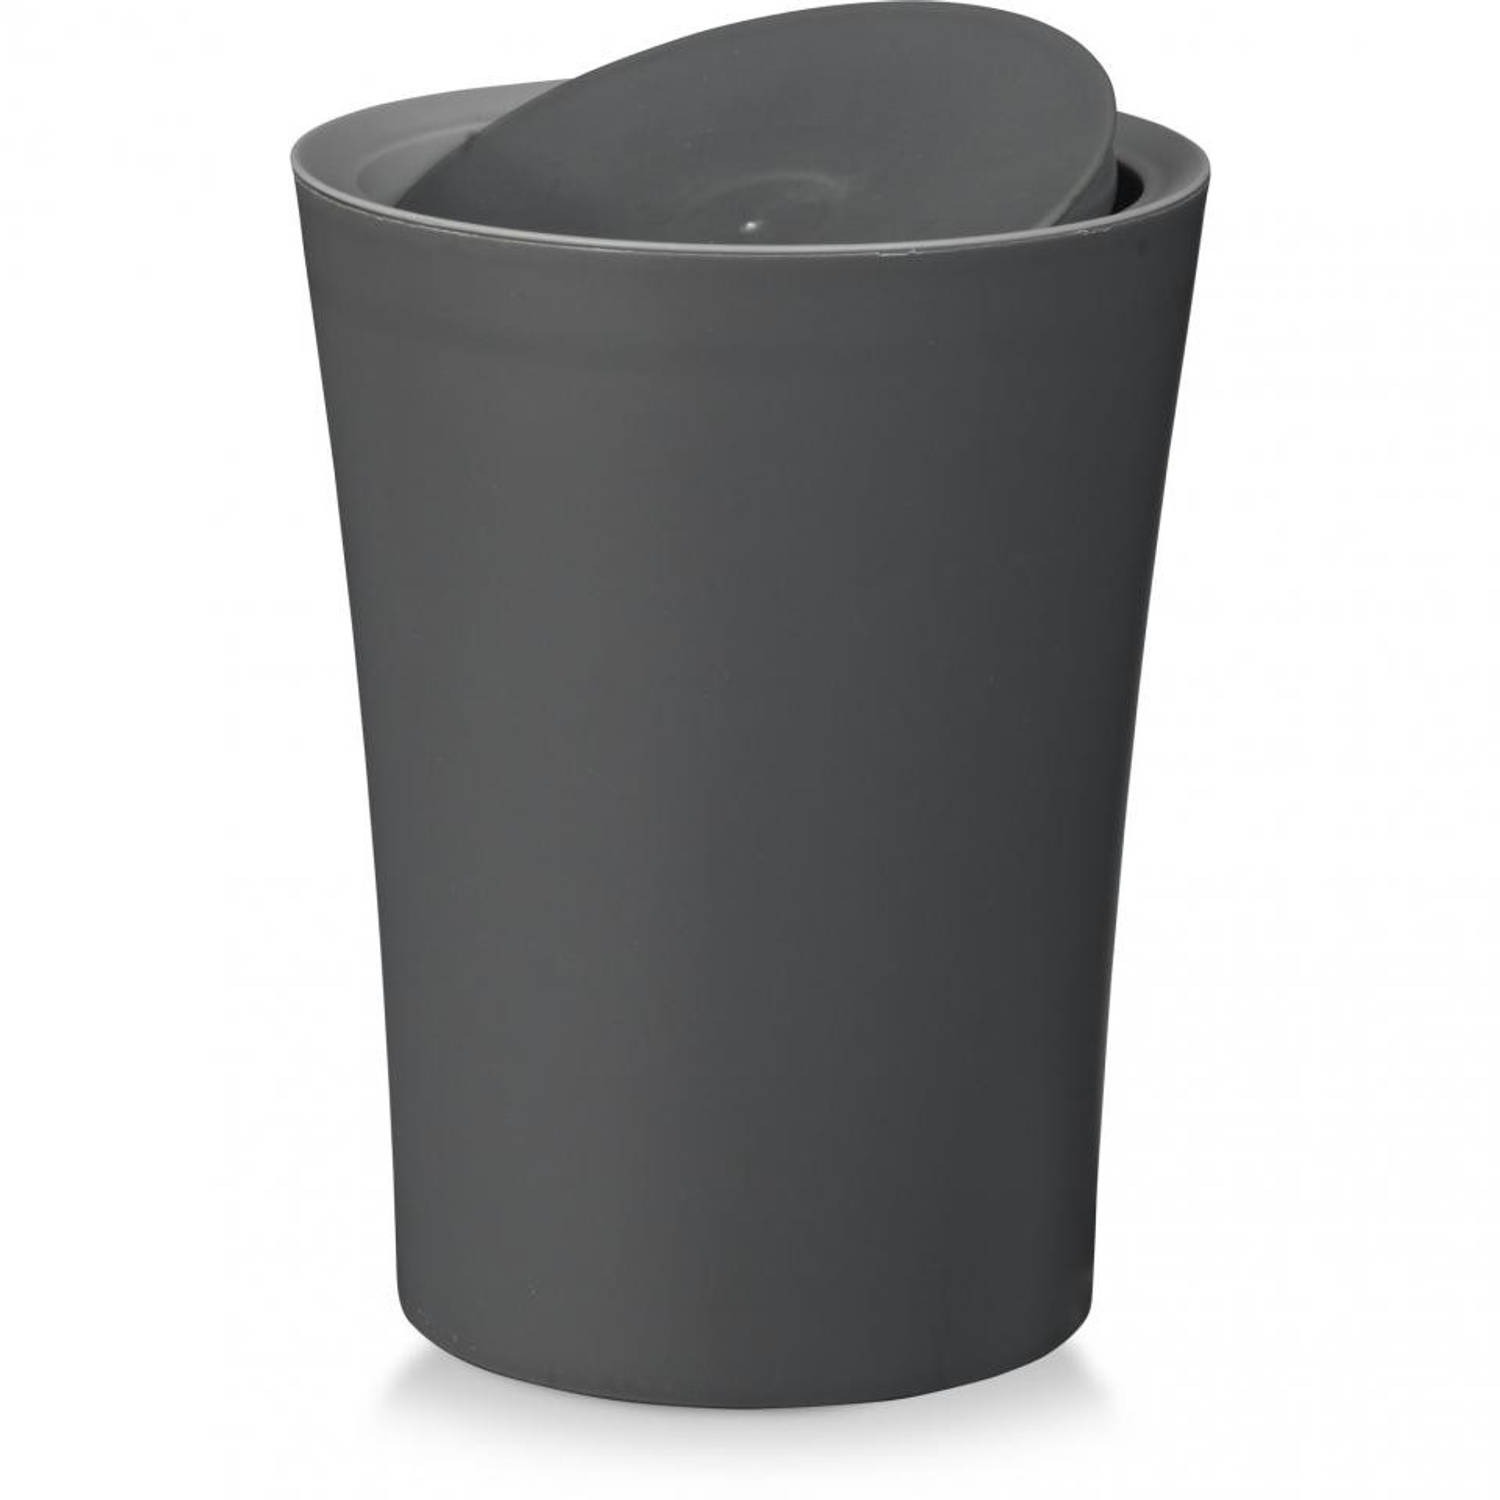 Samenwerken met Jaarlijks Garantie Blokker Twist tafel afvalbakje - 2 liter | Blokker